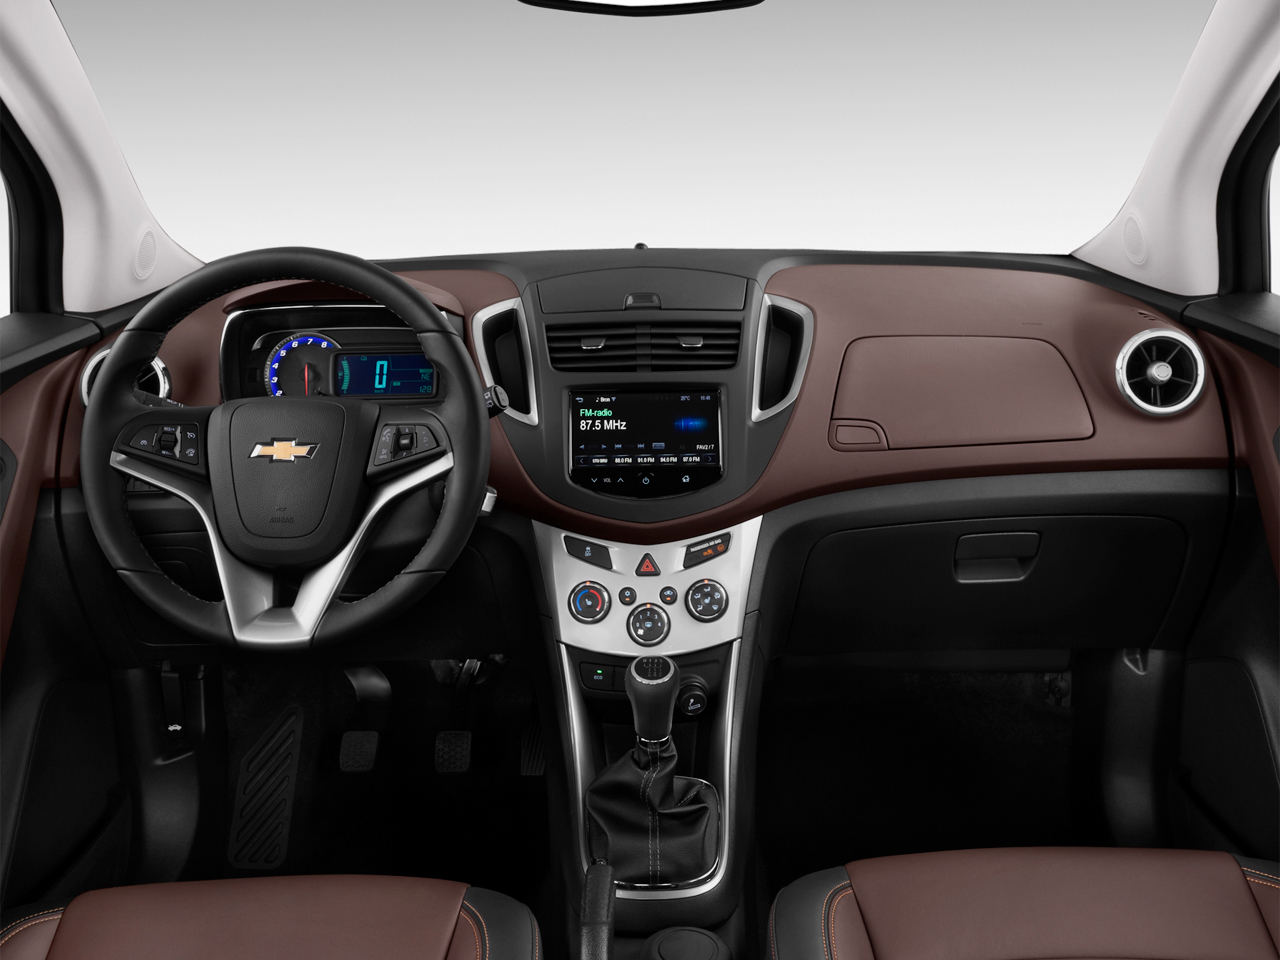 Chevrolet Trax LTZ 2016 interior front view